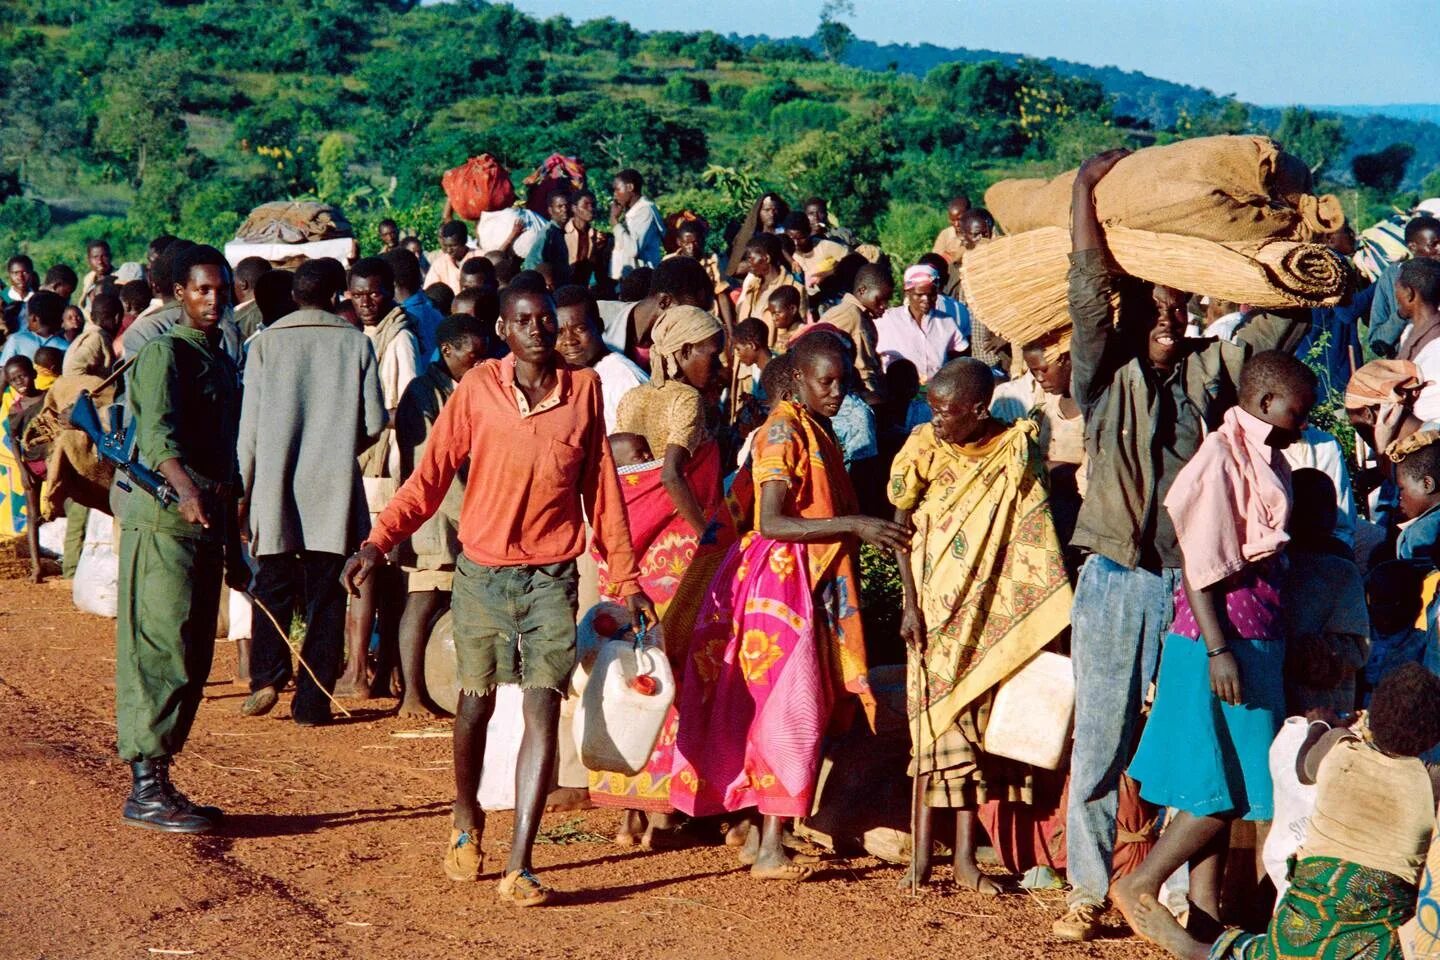 Руанда 1994 геноцид народности Тутси. Племя 30